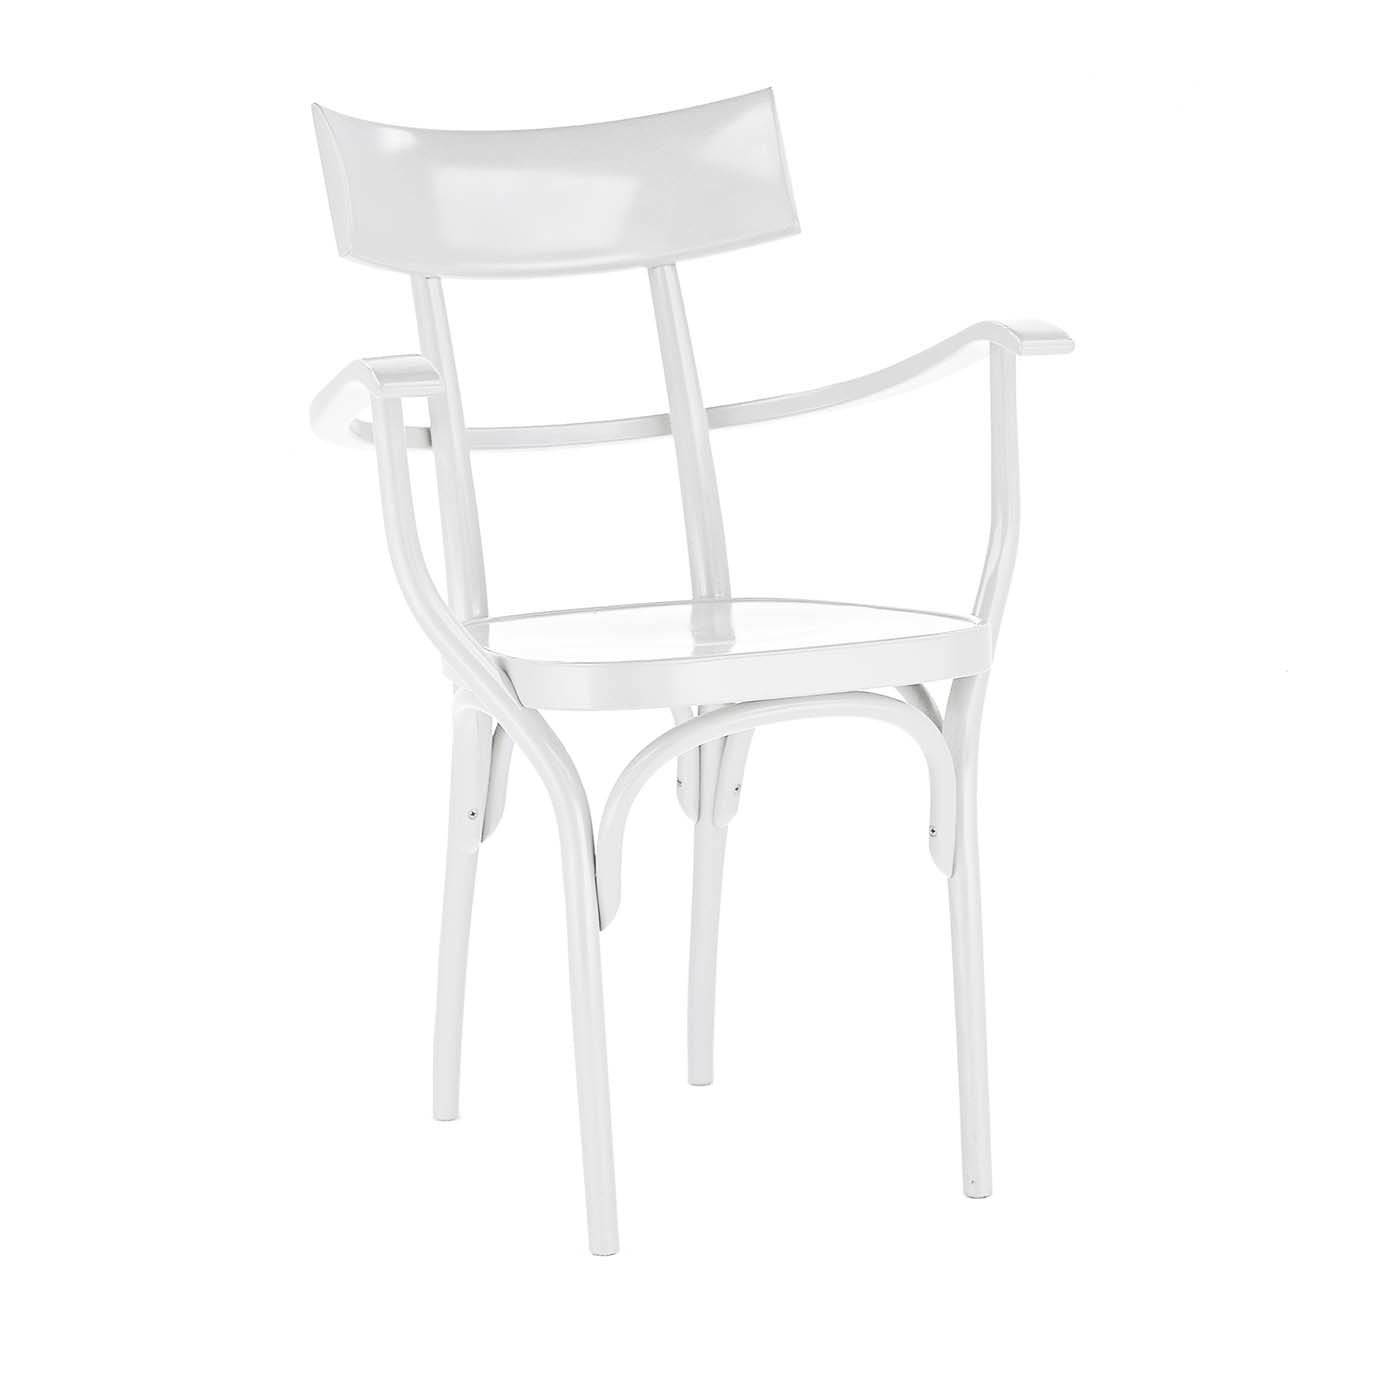 Czech White Chair by Hermann Czech #2 - Main view